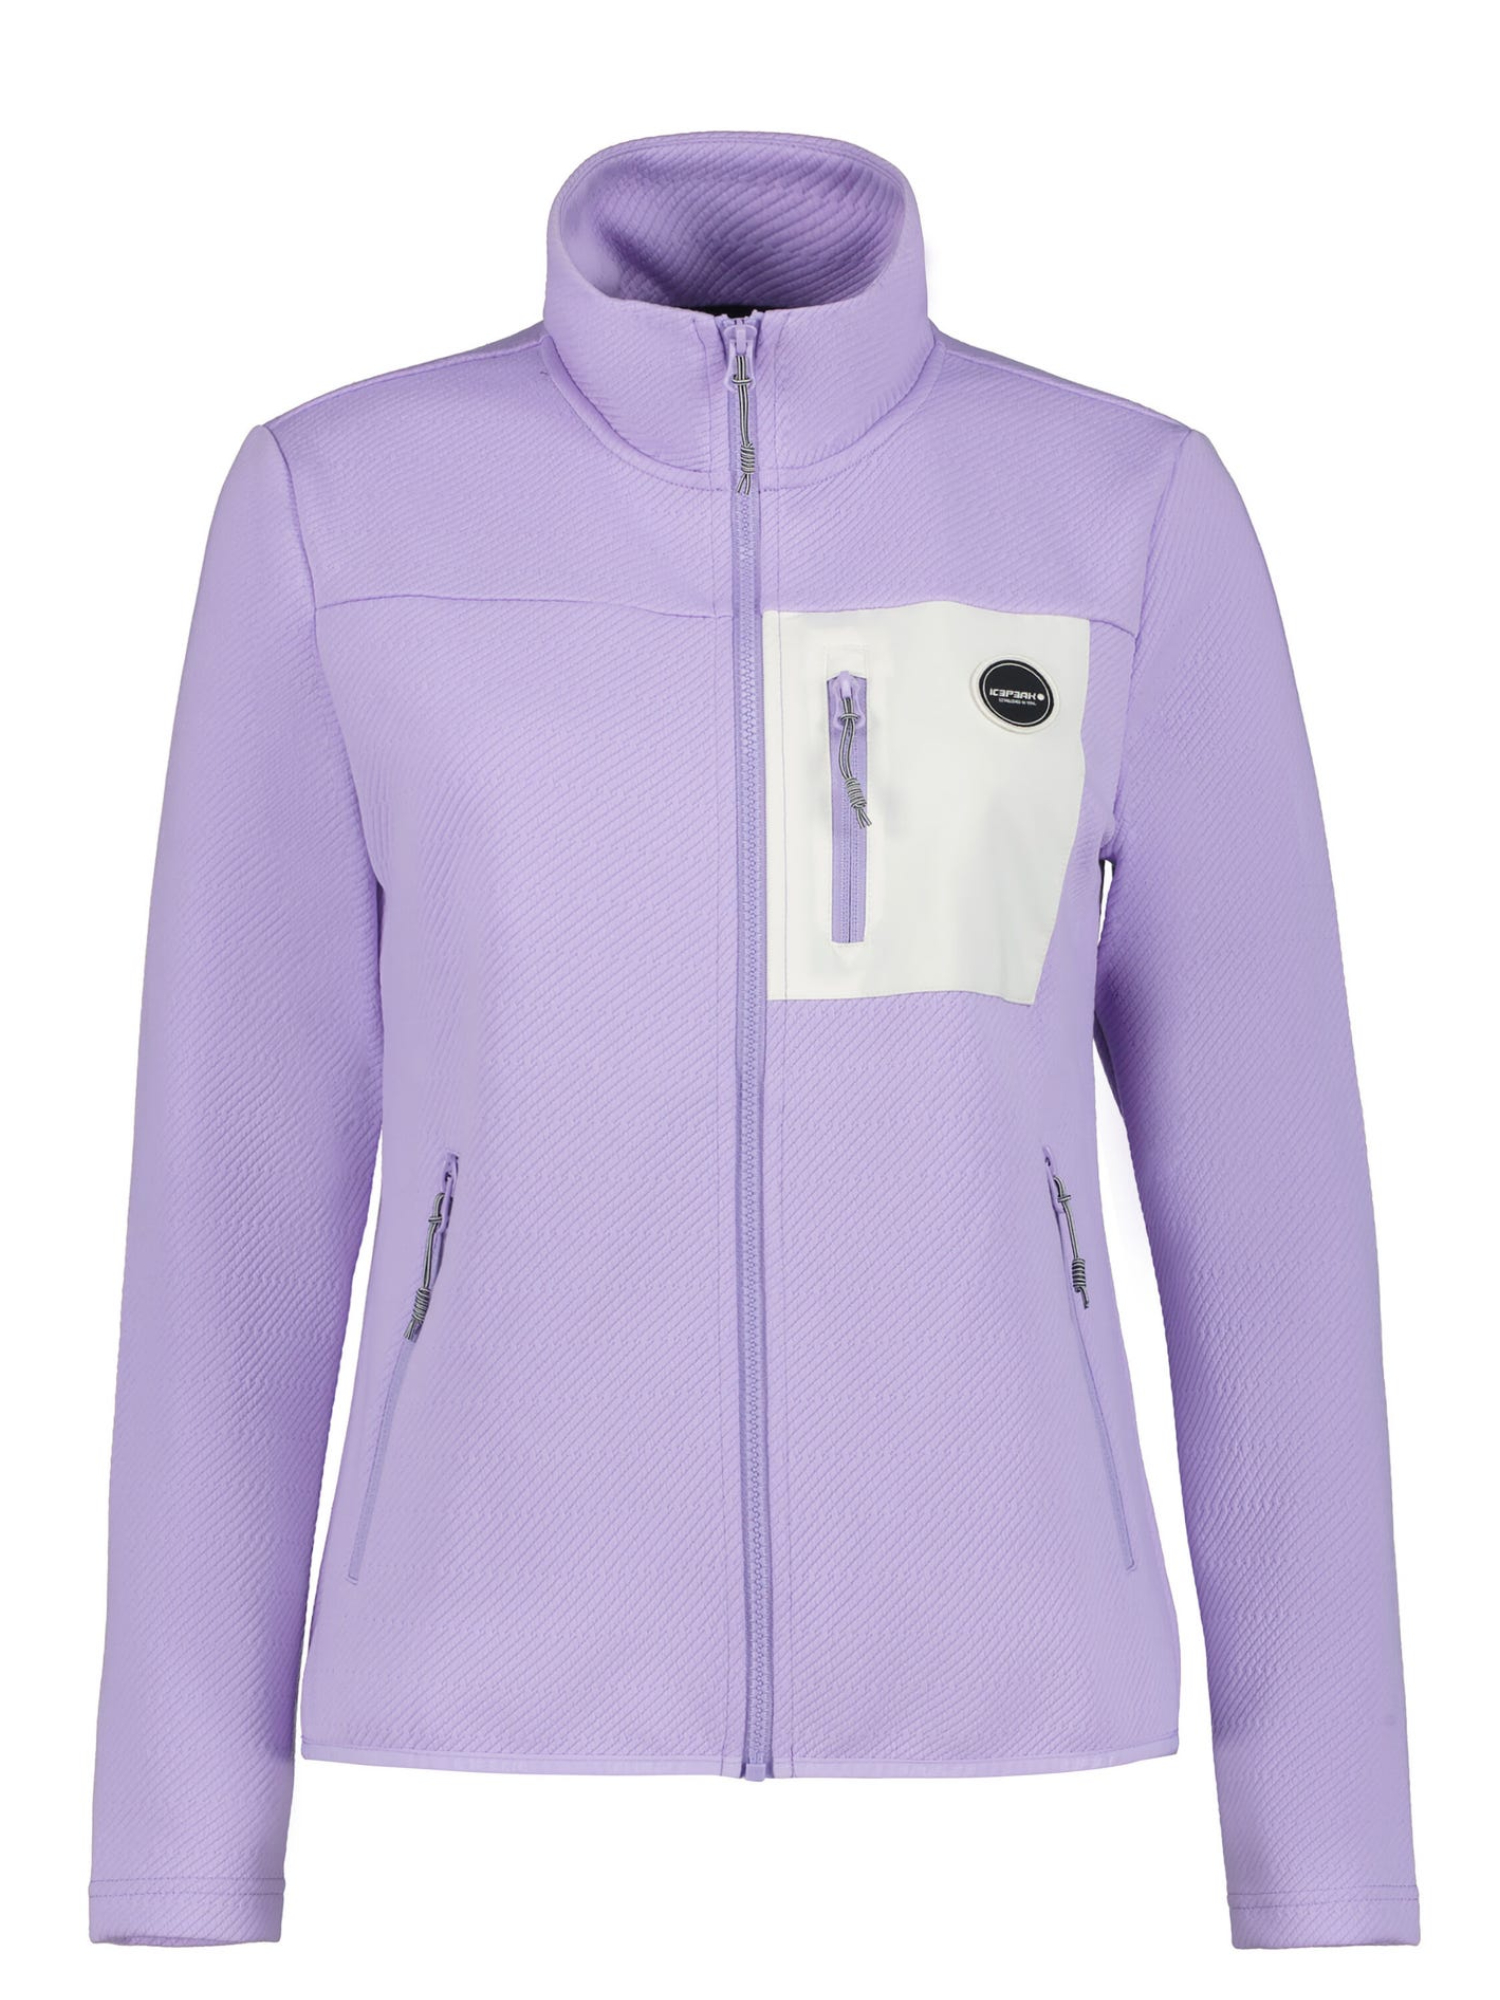 Куртка женская IcePeak Amenia фиолетовая 2XL